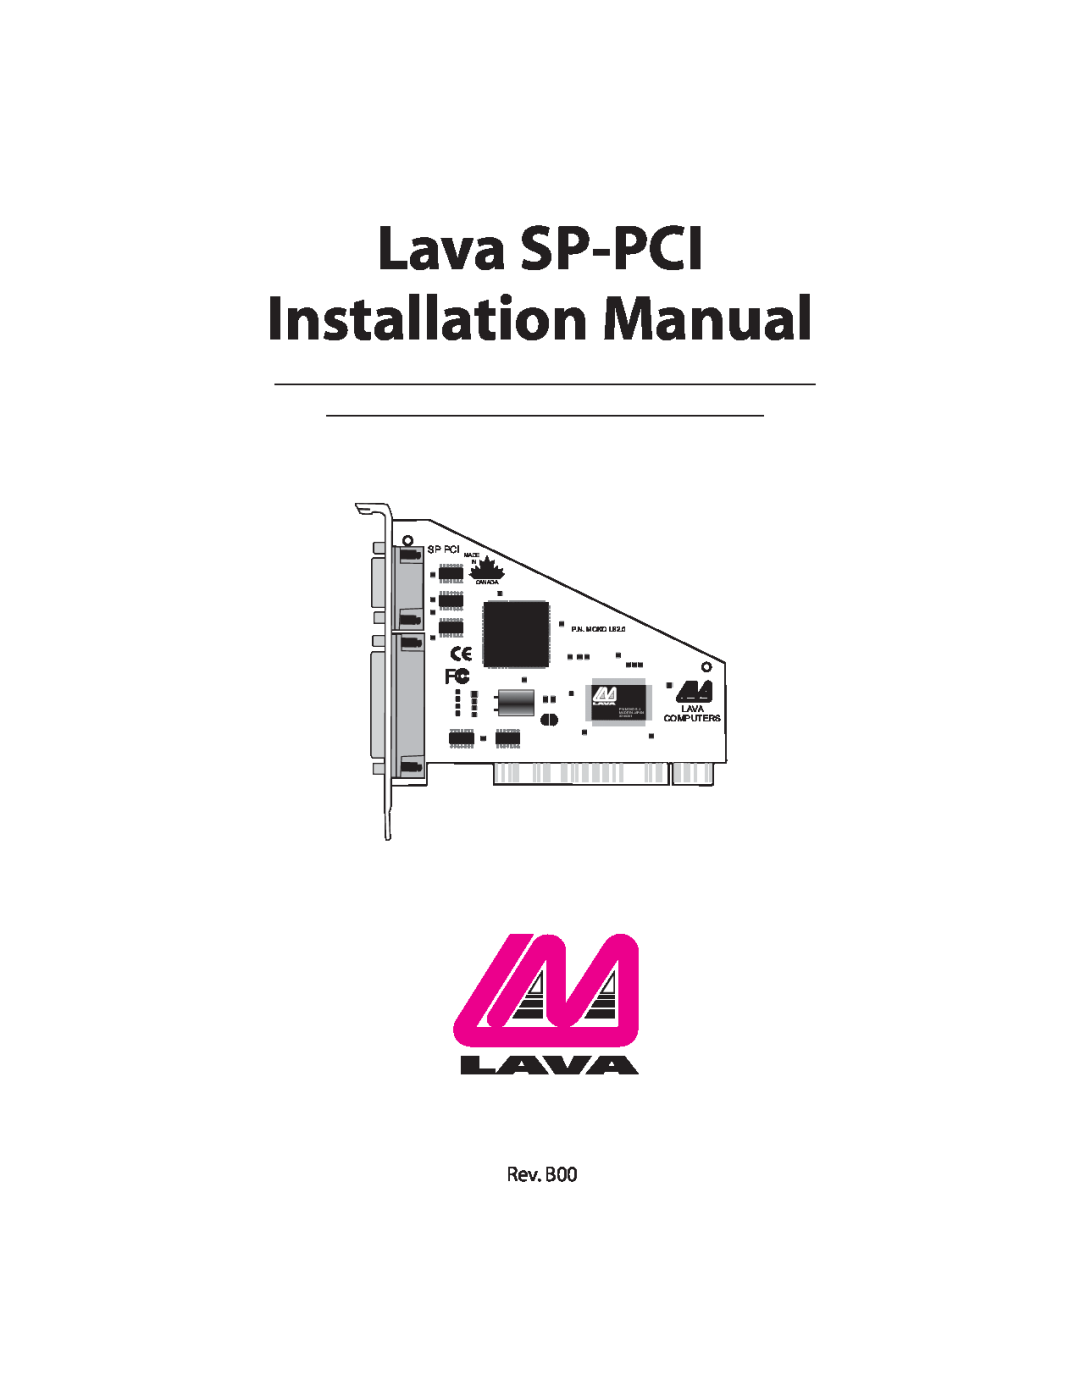 Lava Computer installation manual Lava SP-PCI Installation Manual, Sp Pci, P.N. MOKO L82.0, Computers, Made In Canada 